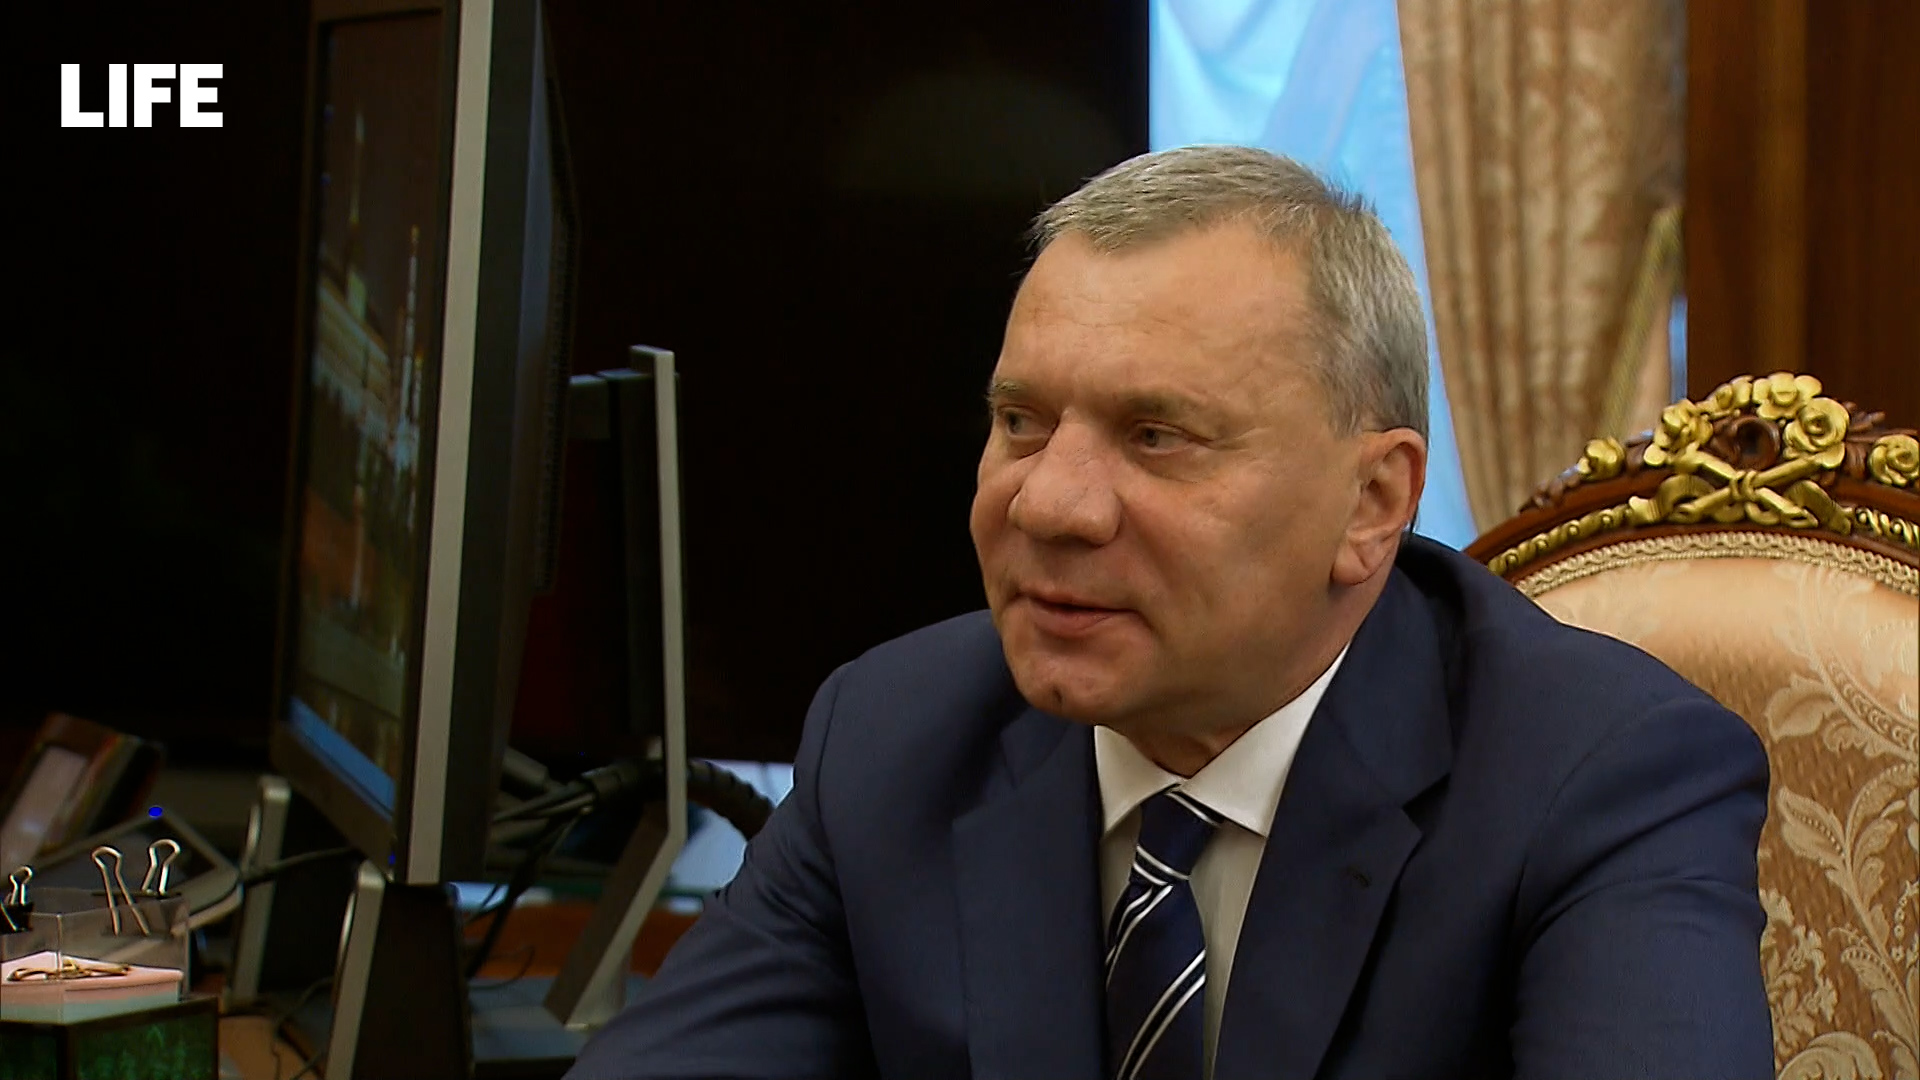 Борисов сообщил Путину о выходе РФ из МКС и формировании отечественной орбитальной станции